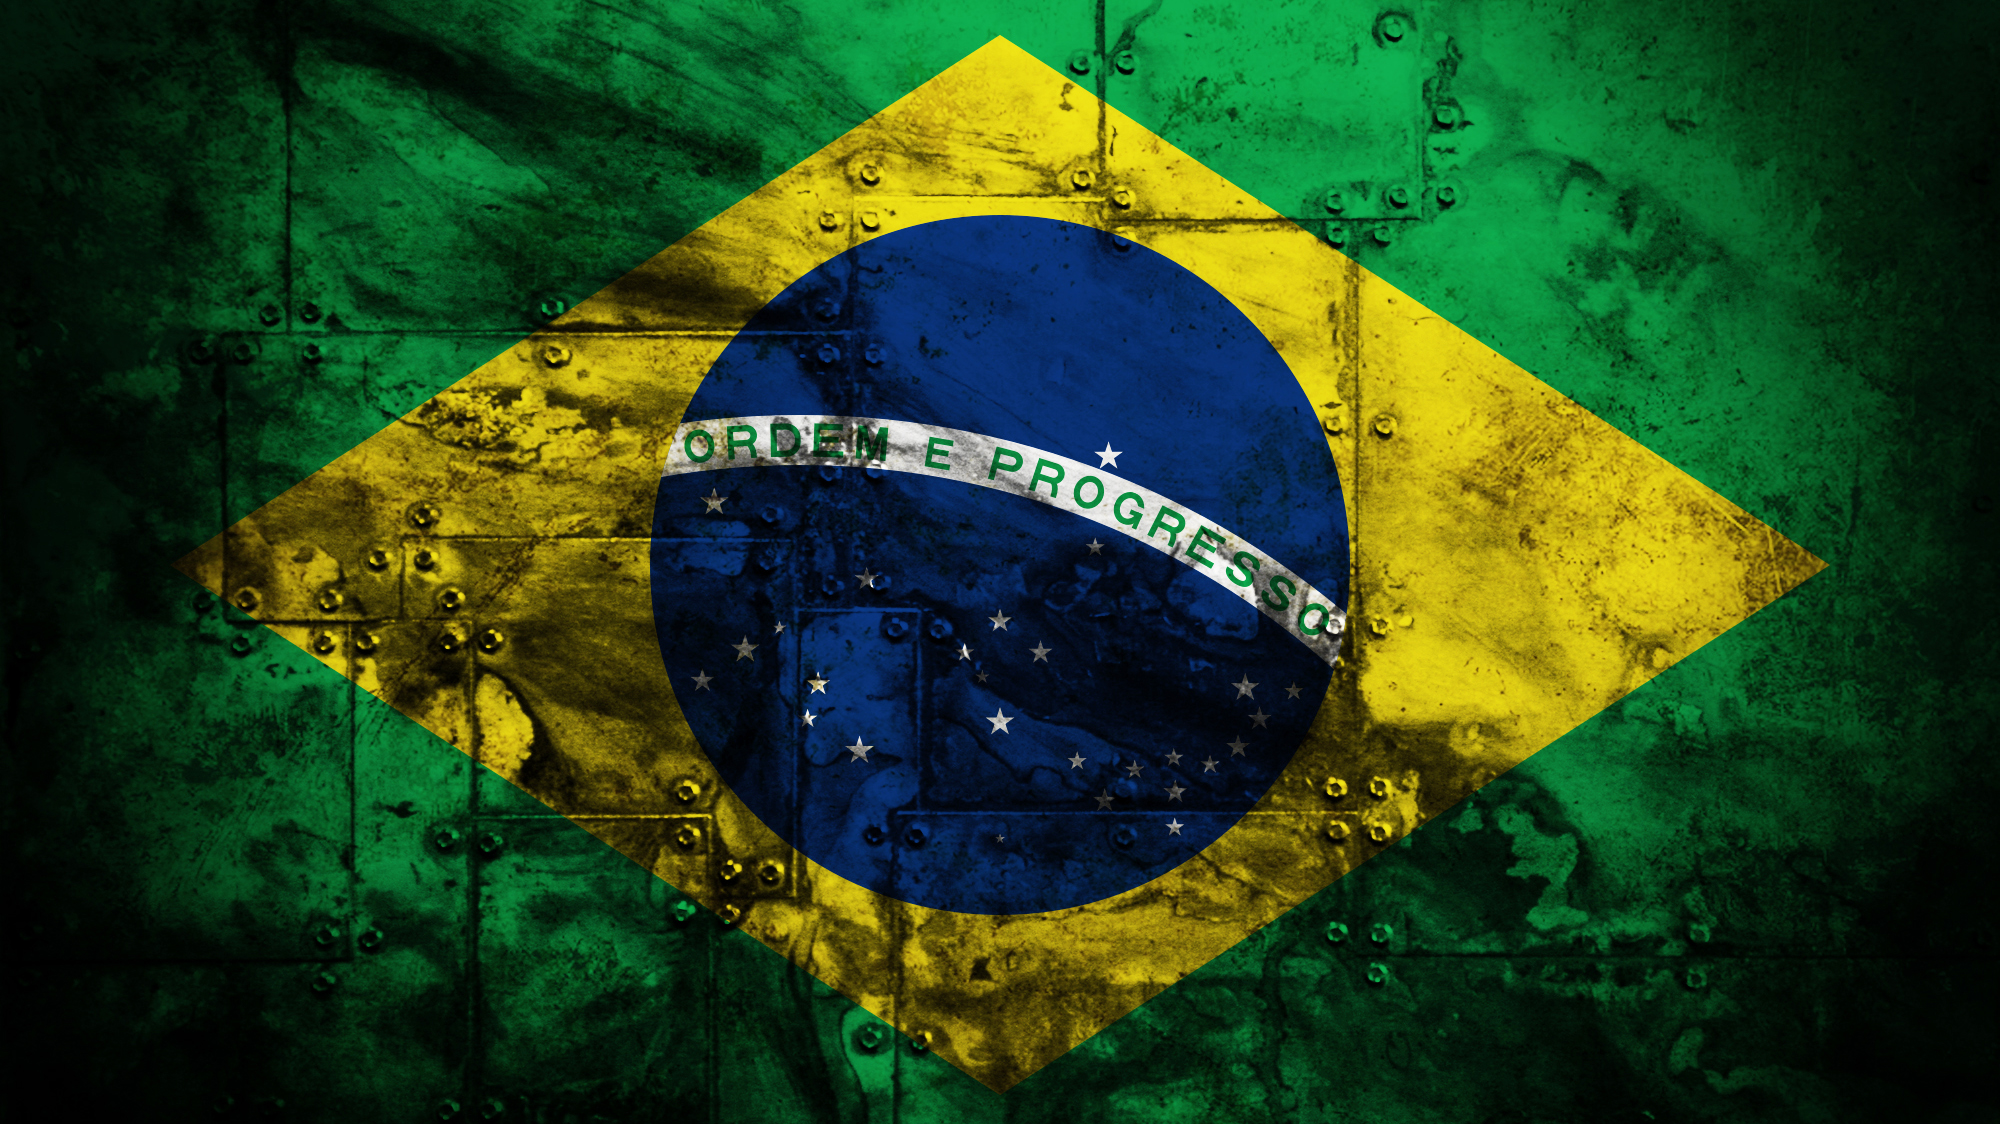 Spit brazil image